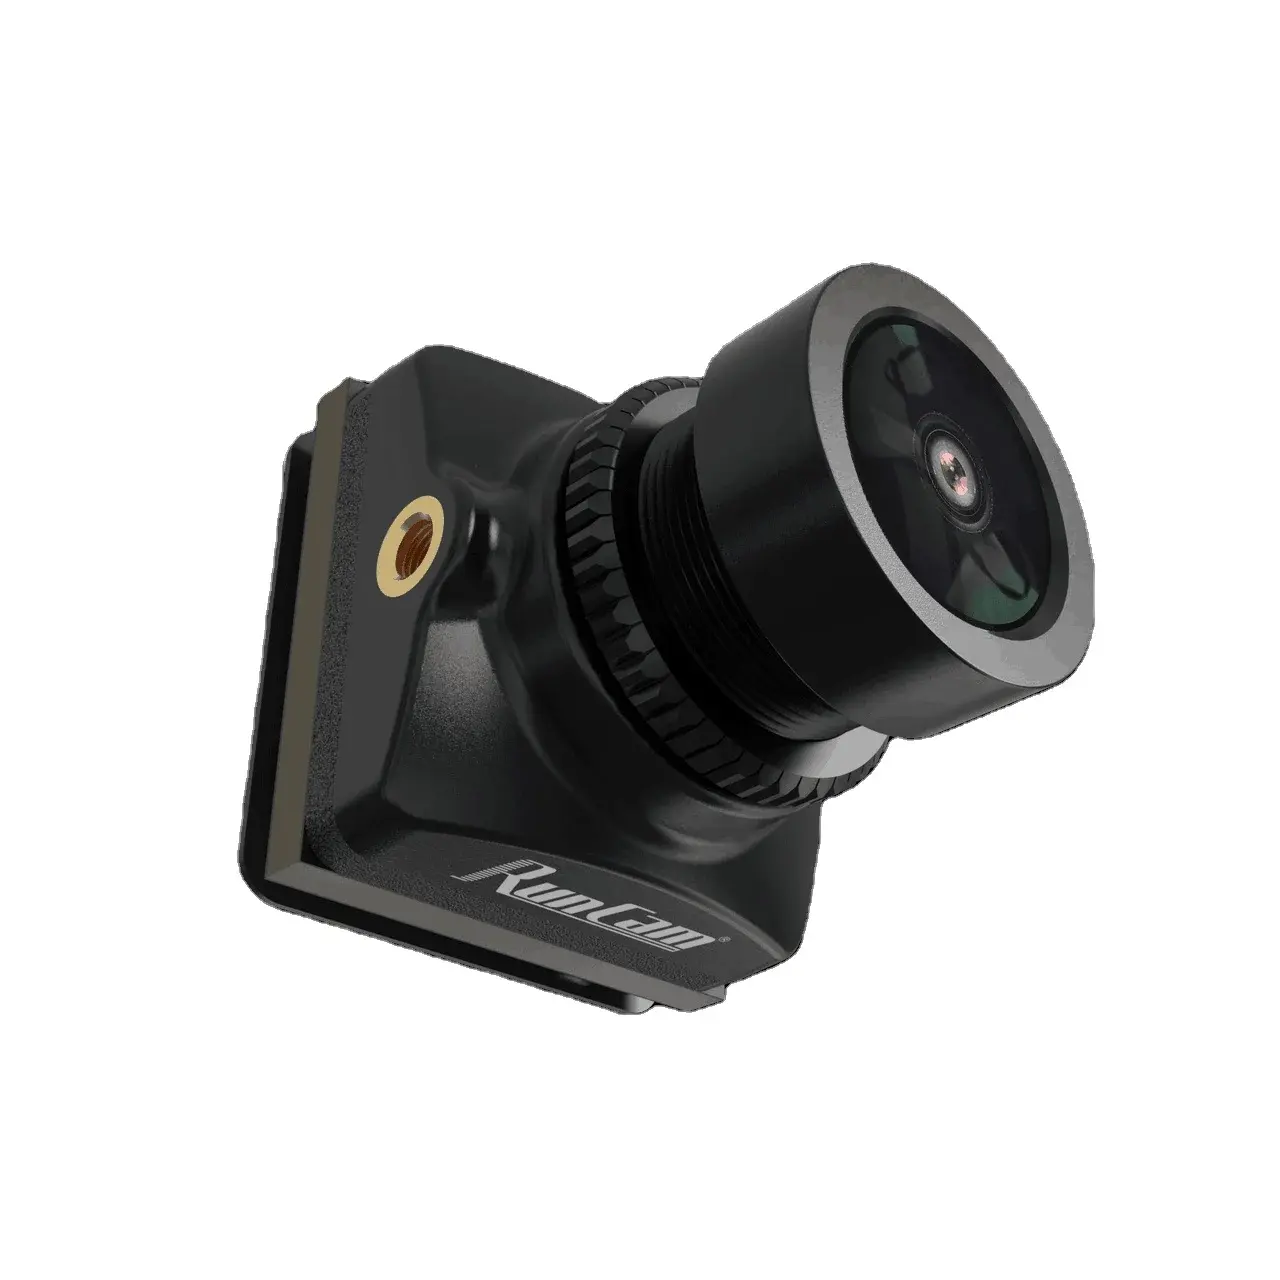 Runcam Phoenix 2 Sp 화면 비율 4:3 16:9 야간 트랙보기 자유형 카메라 Dc 5-36v 용 Rc Fpv 레이싱 드론 쿼드콥터 Uav